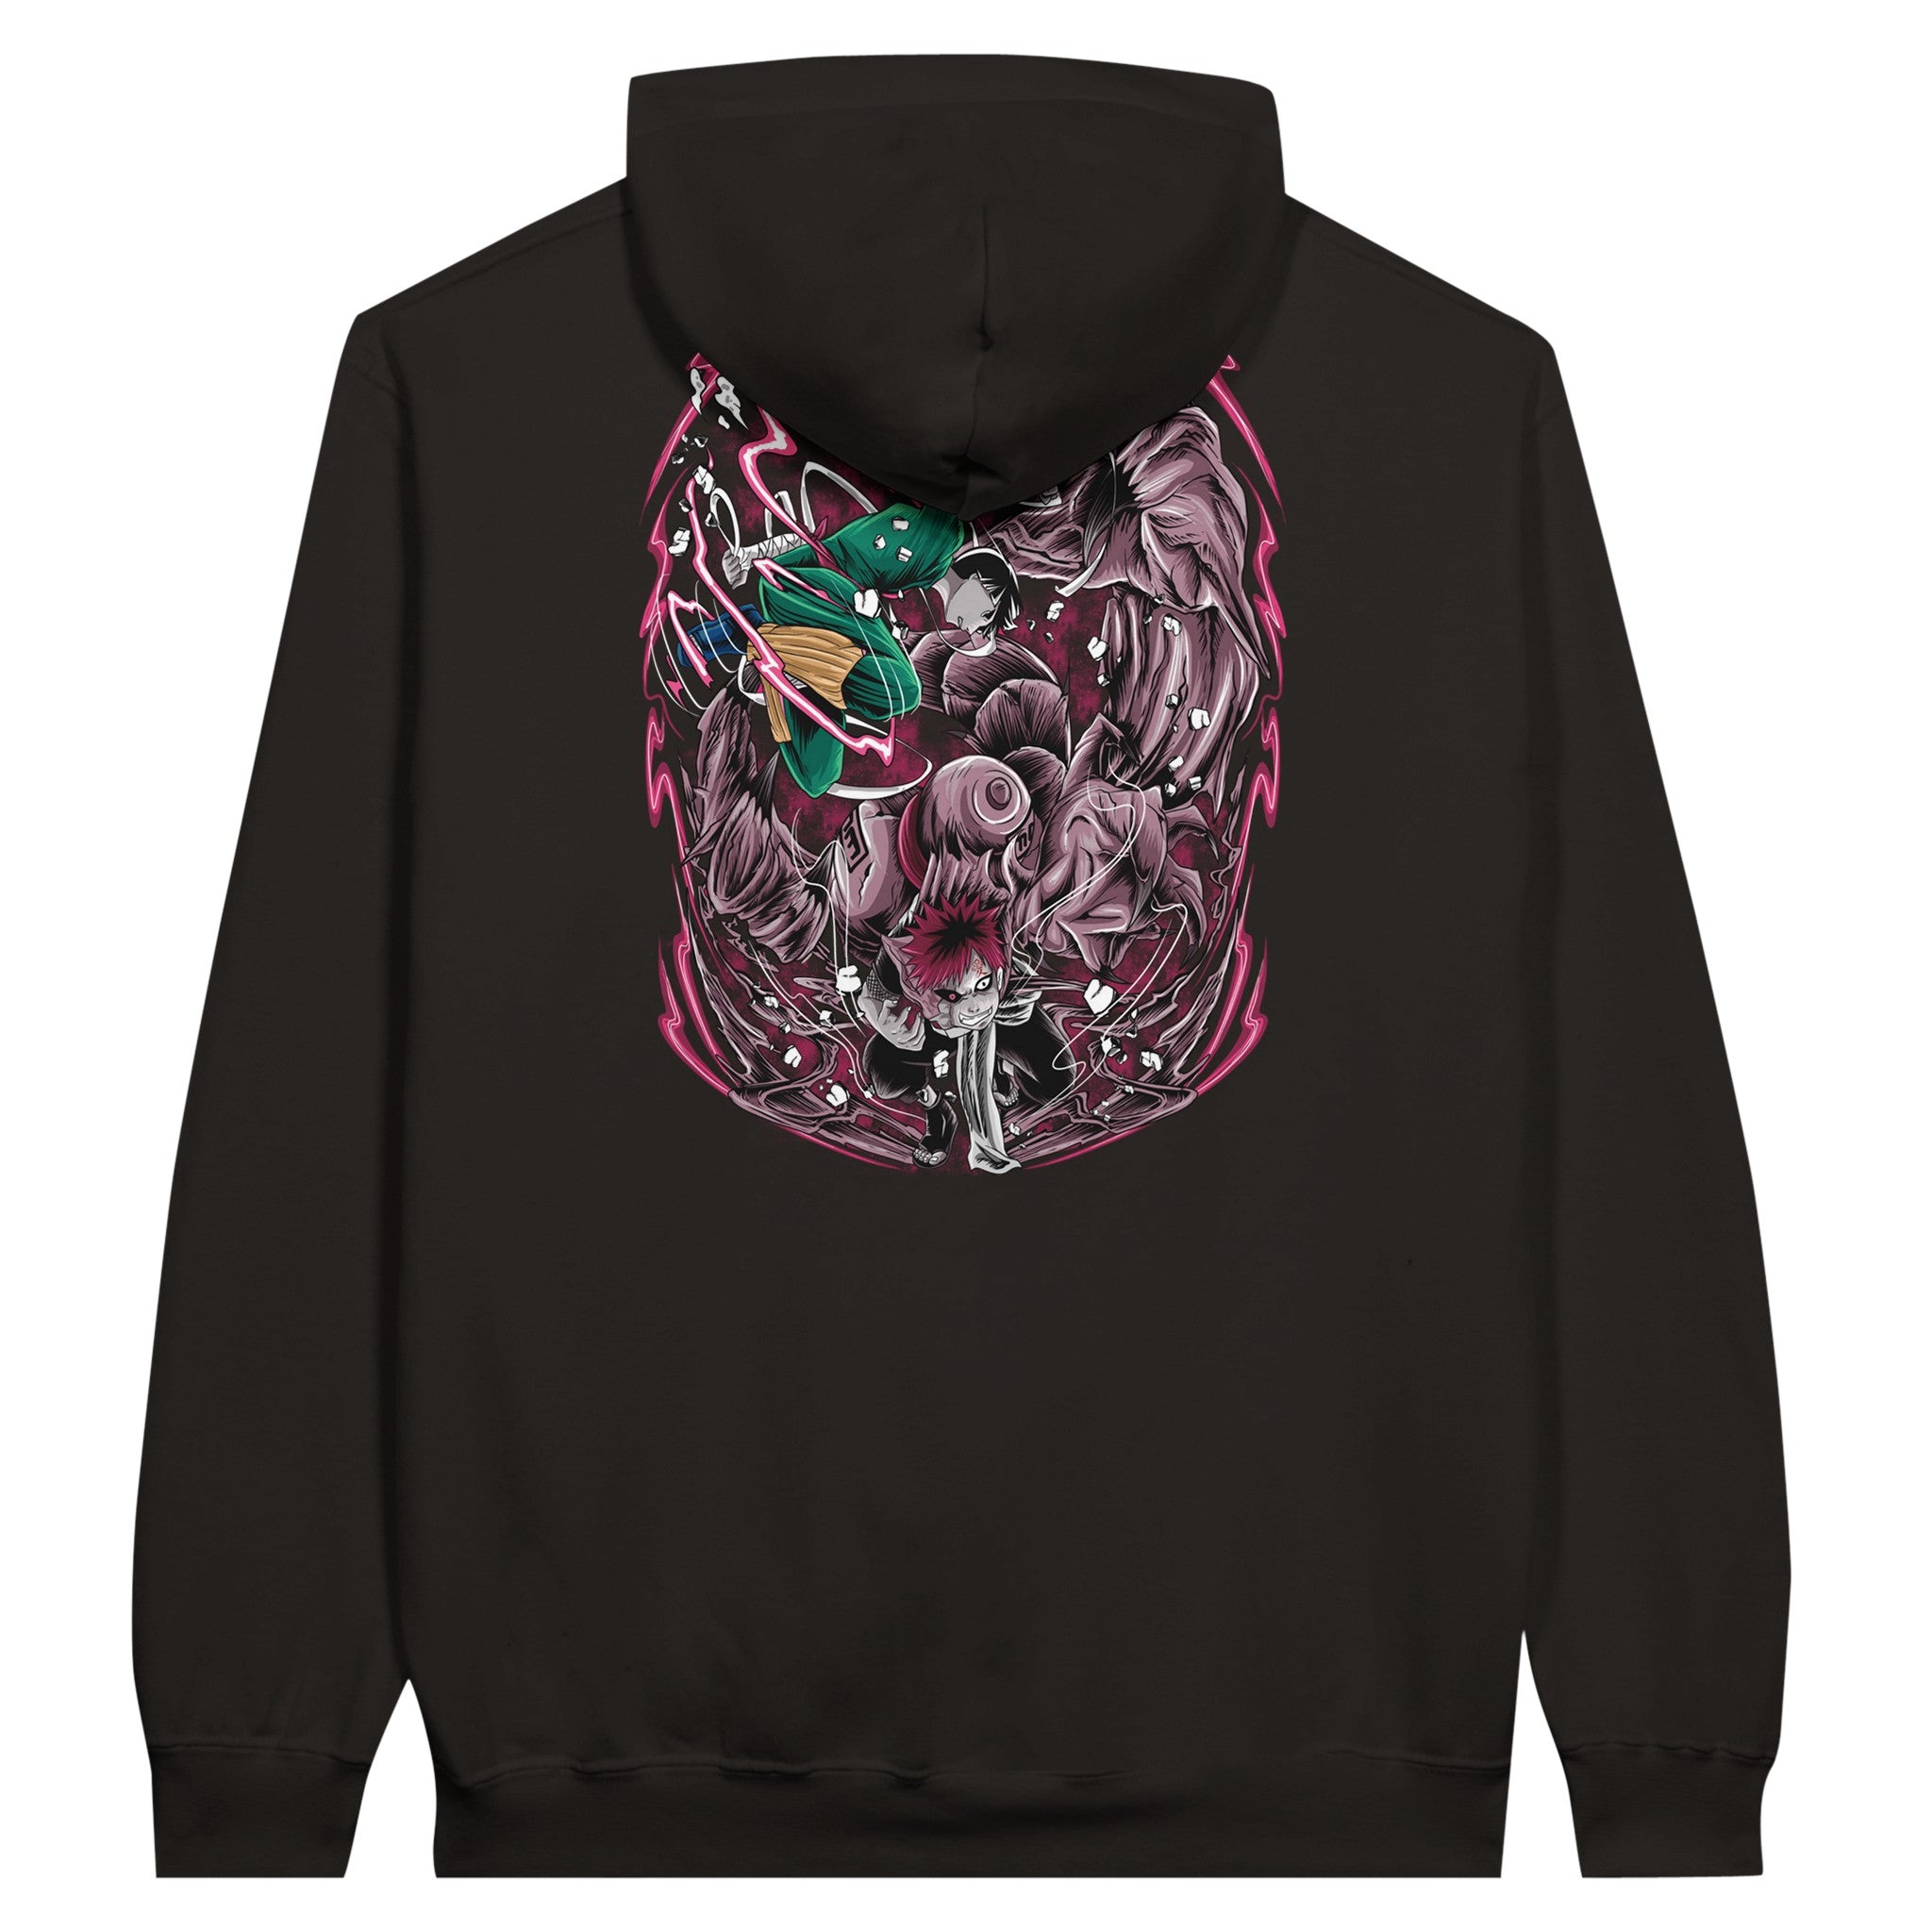 shop and buy naruto anime clothing gaara vs rock lee hoodie